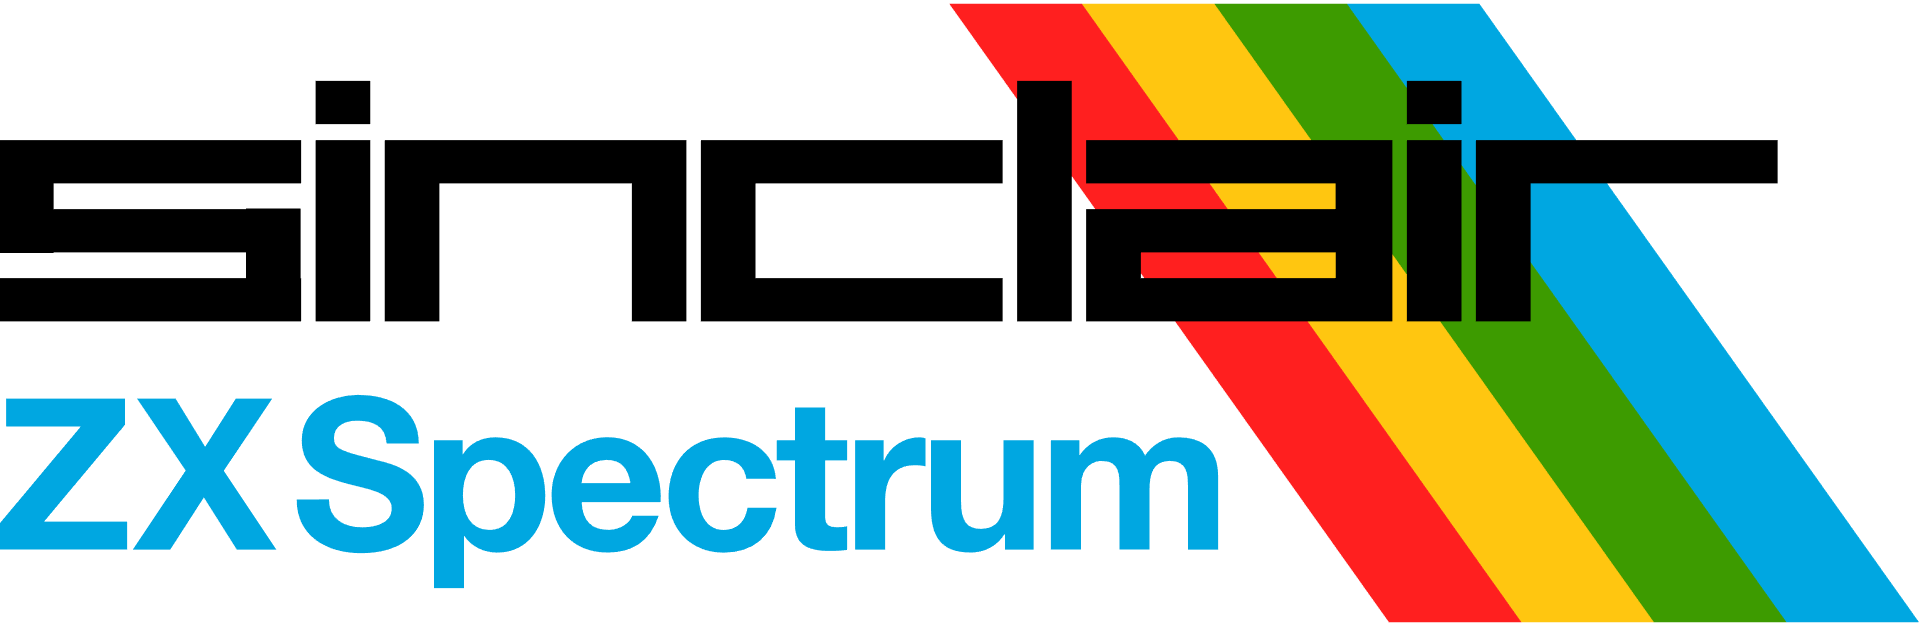 ZX_Spectrum.png